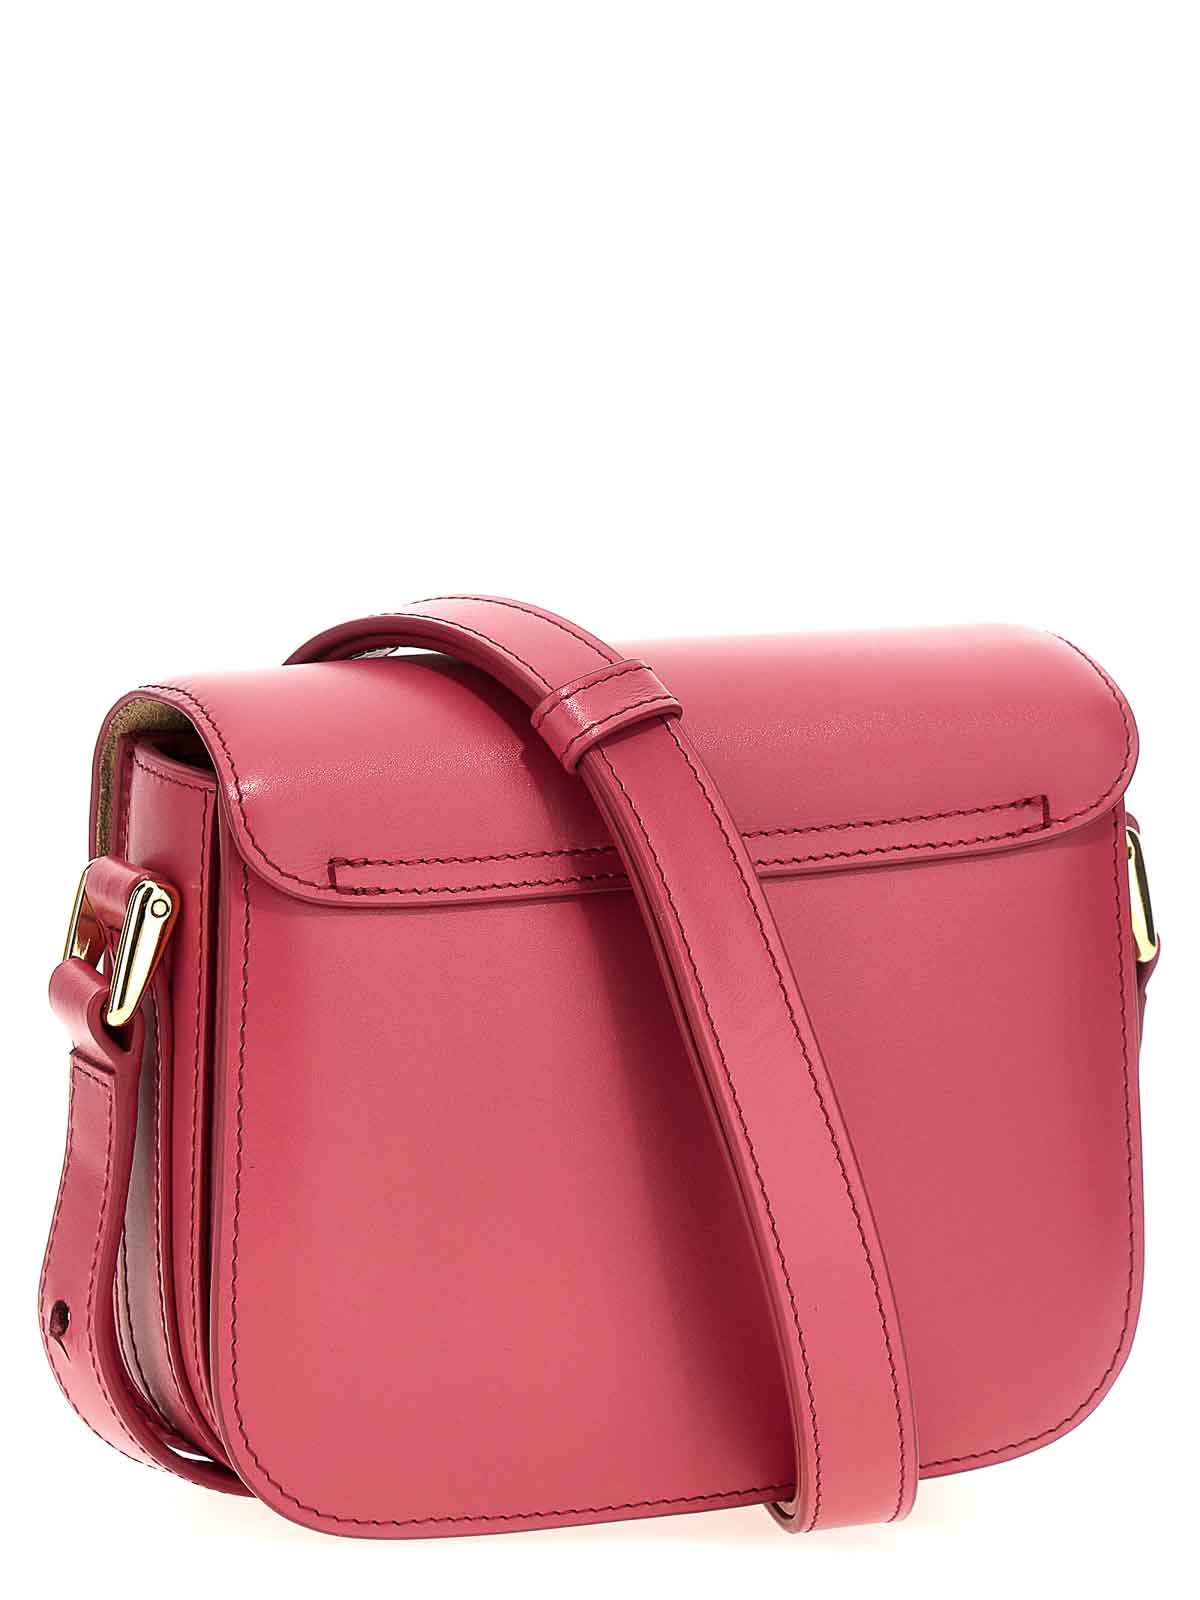 Shop Apc Grace Mini Crossbody Bag In Multicolour